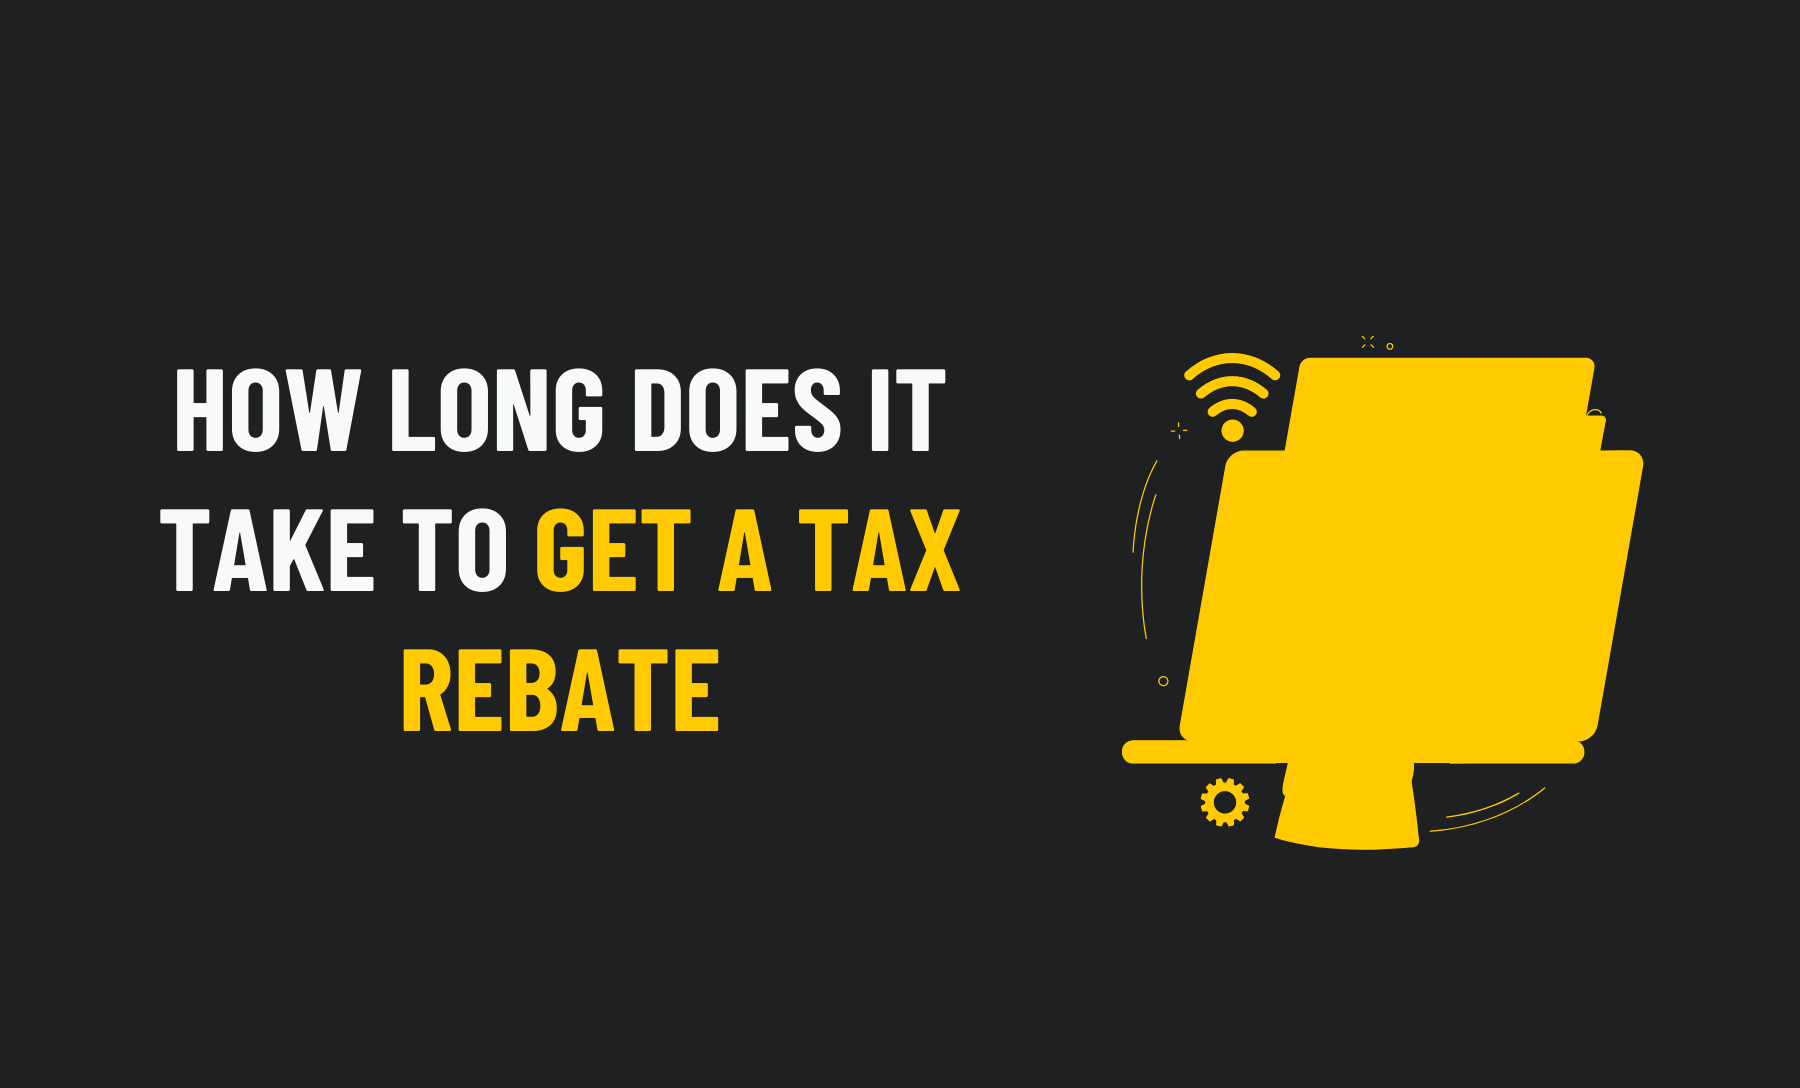 Get A Tax Rebate